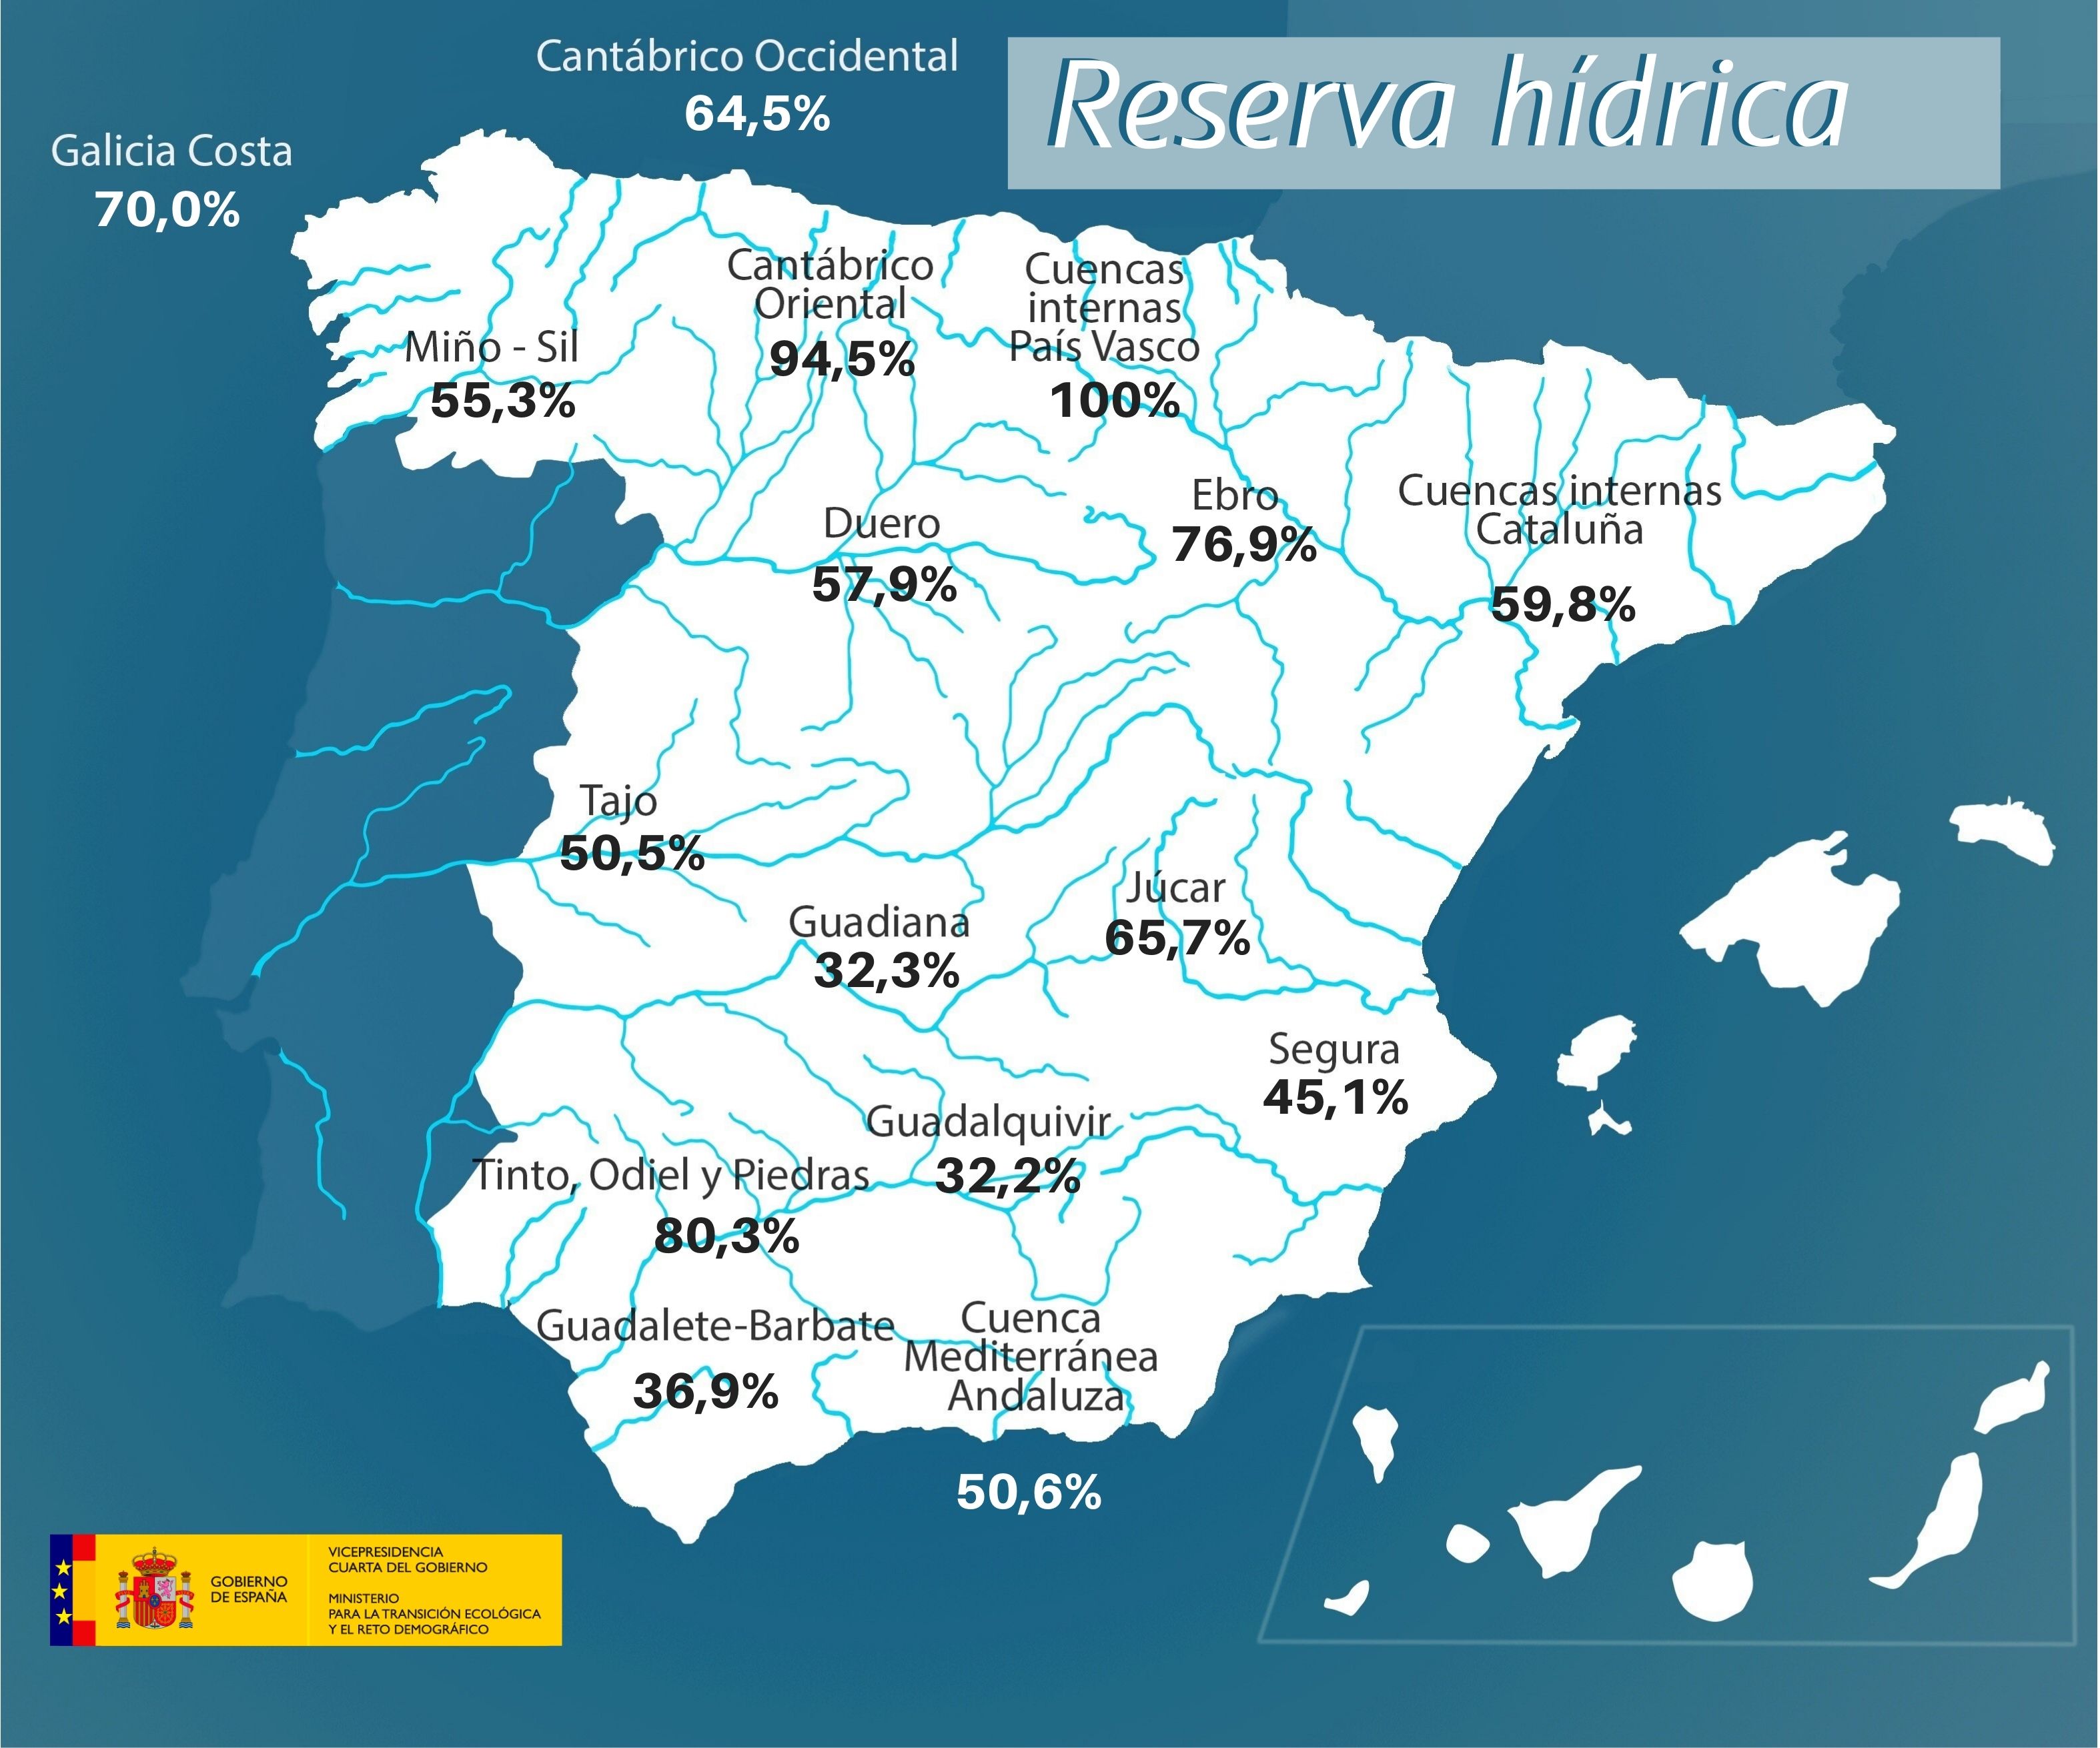 Reserva hídricaLa reserva hídrica española se encuentra al 50,7 por ciento de su capacidad